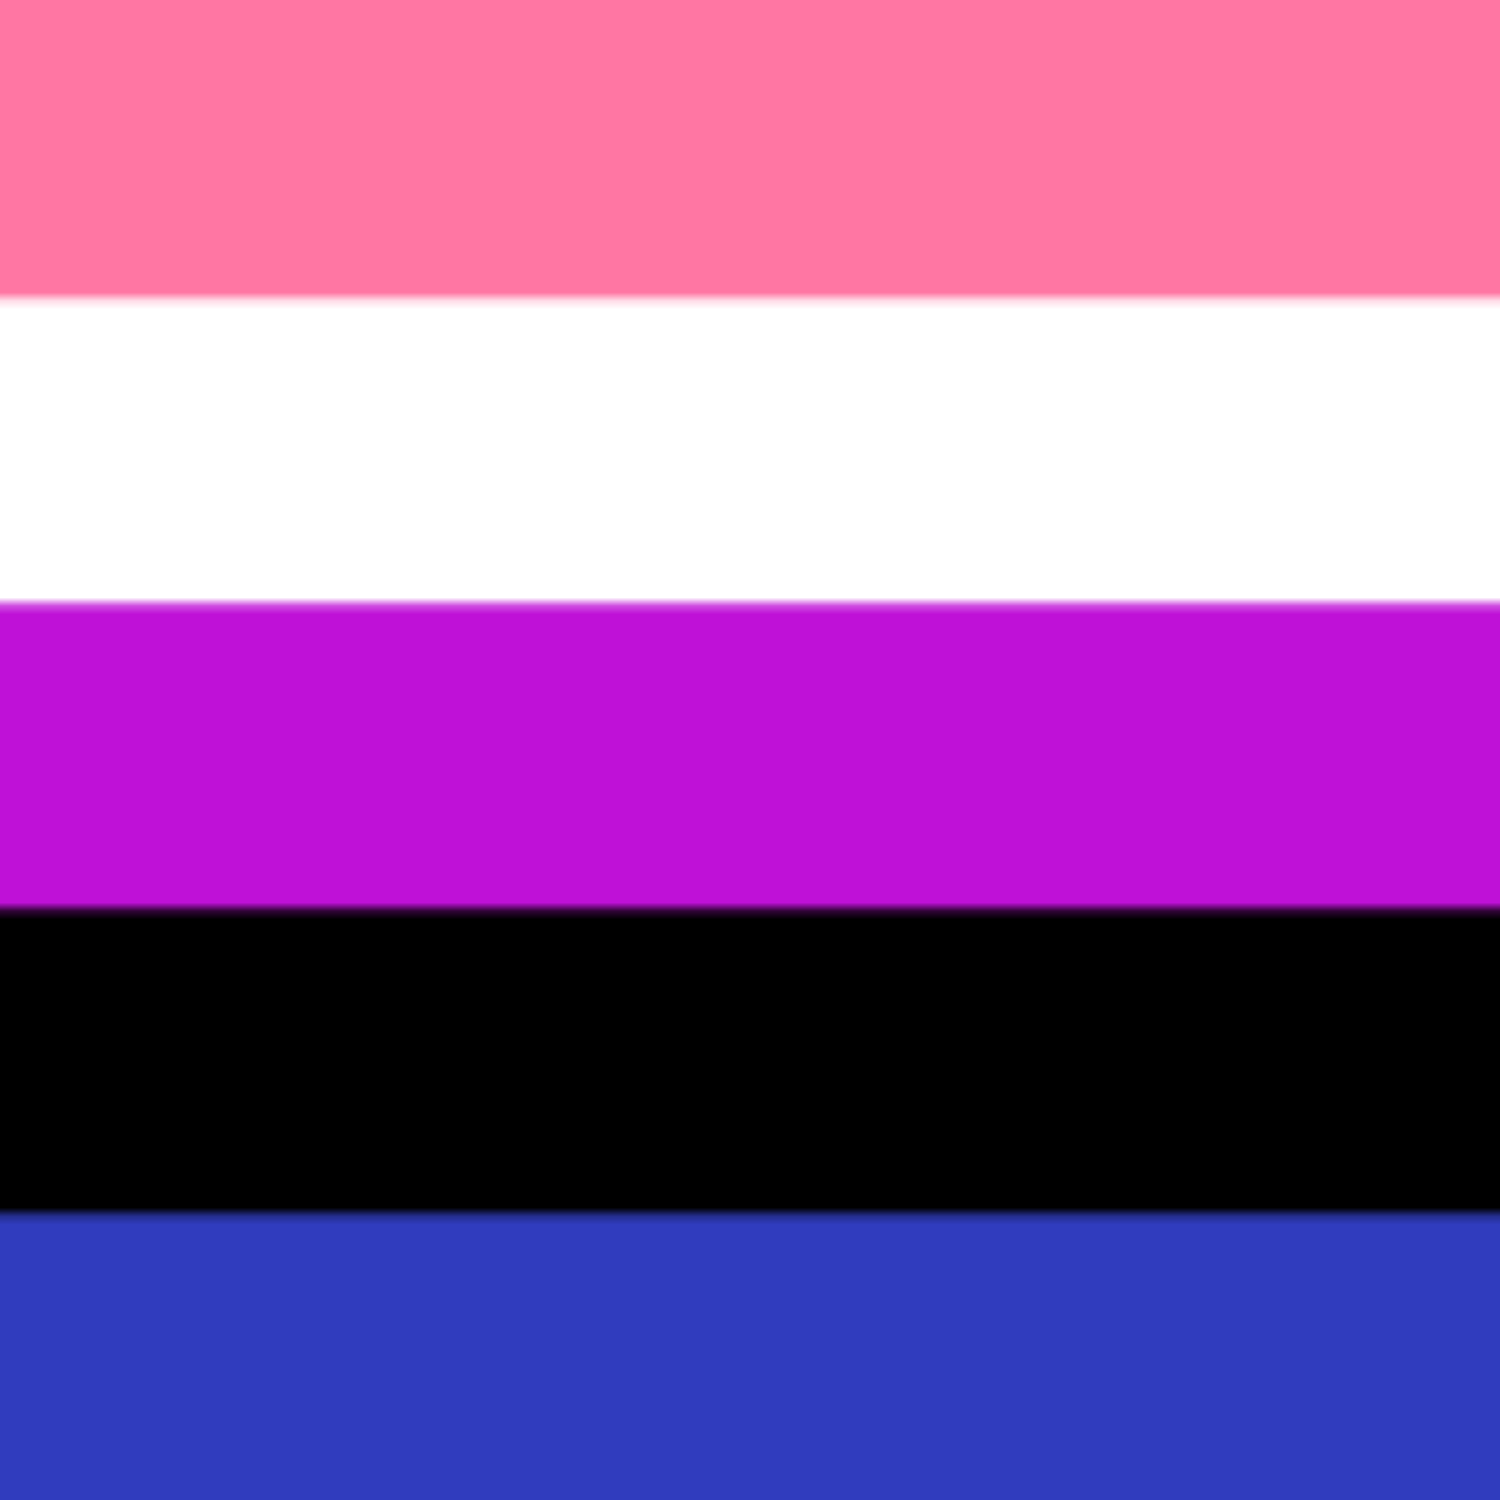 Genderfluid pride flag, design by JJ Poole, 2012.